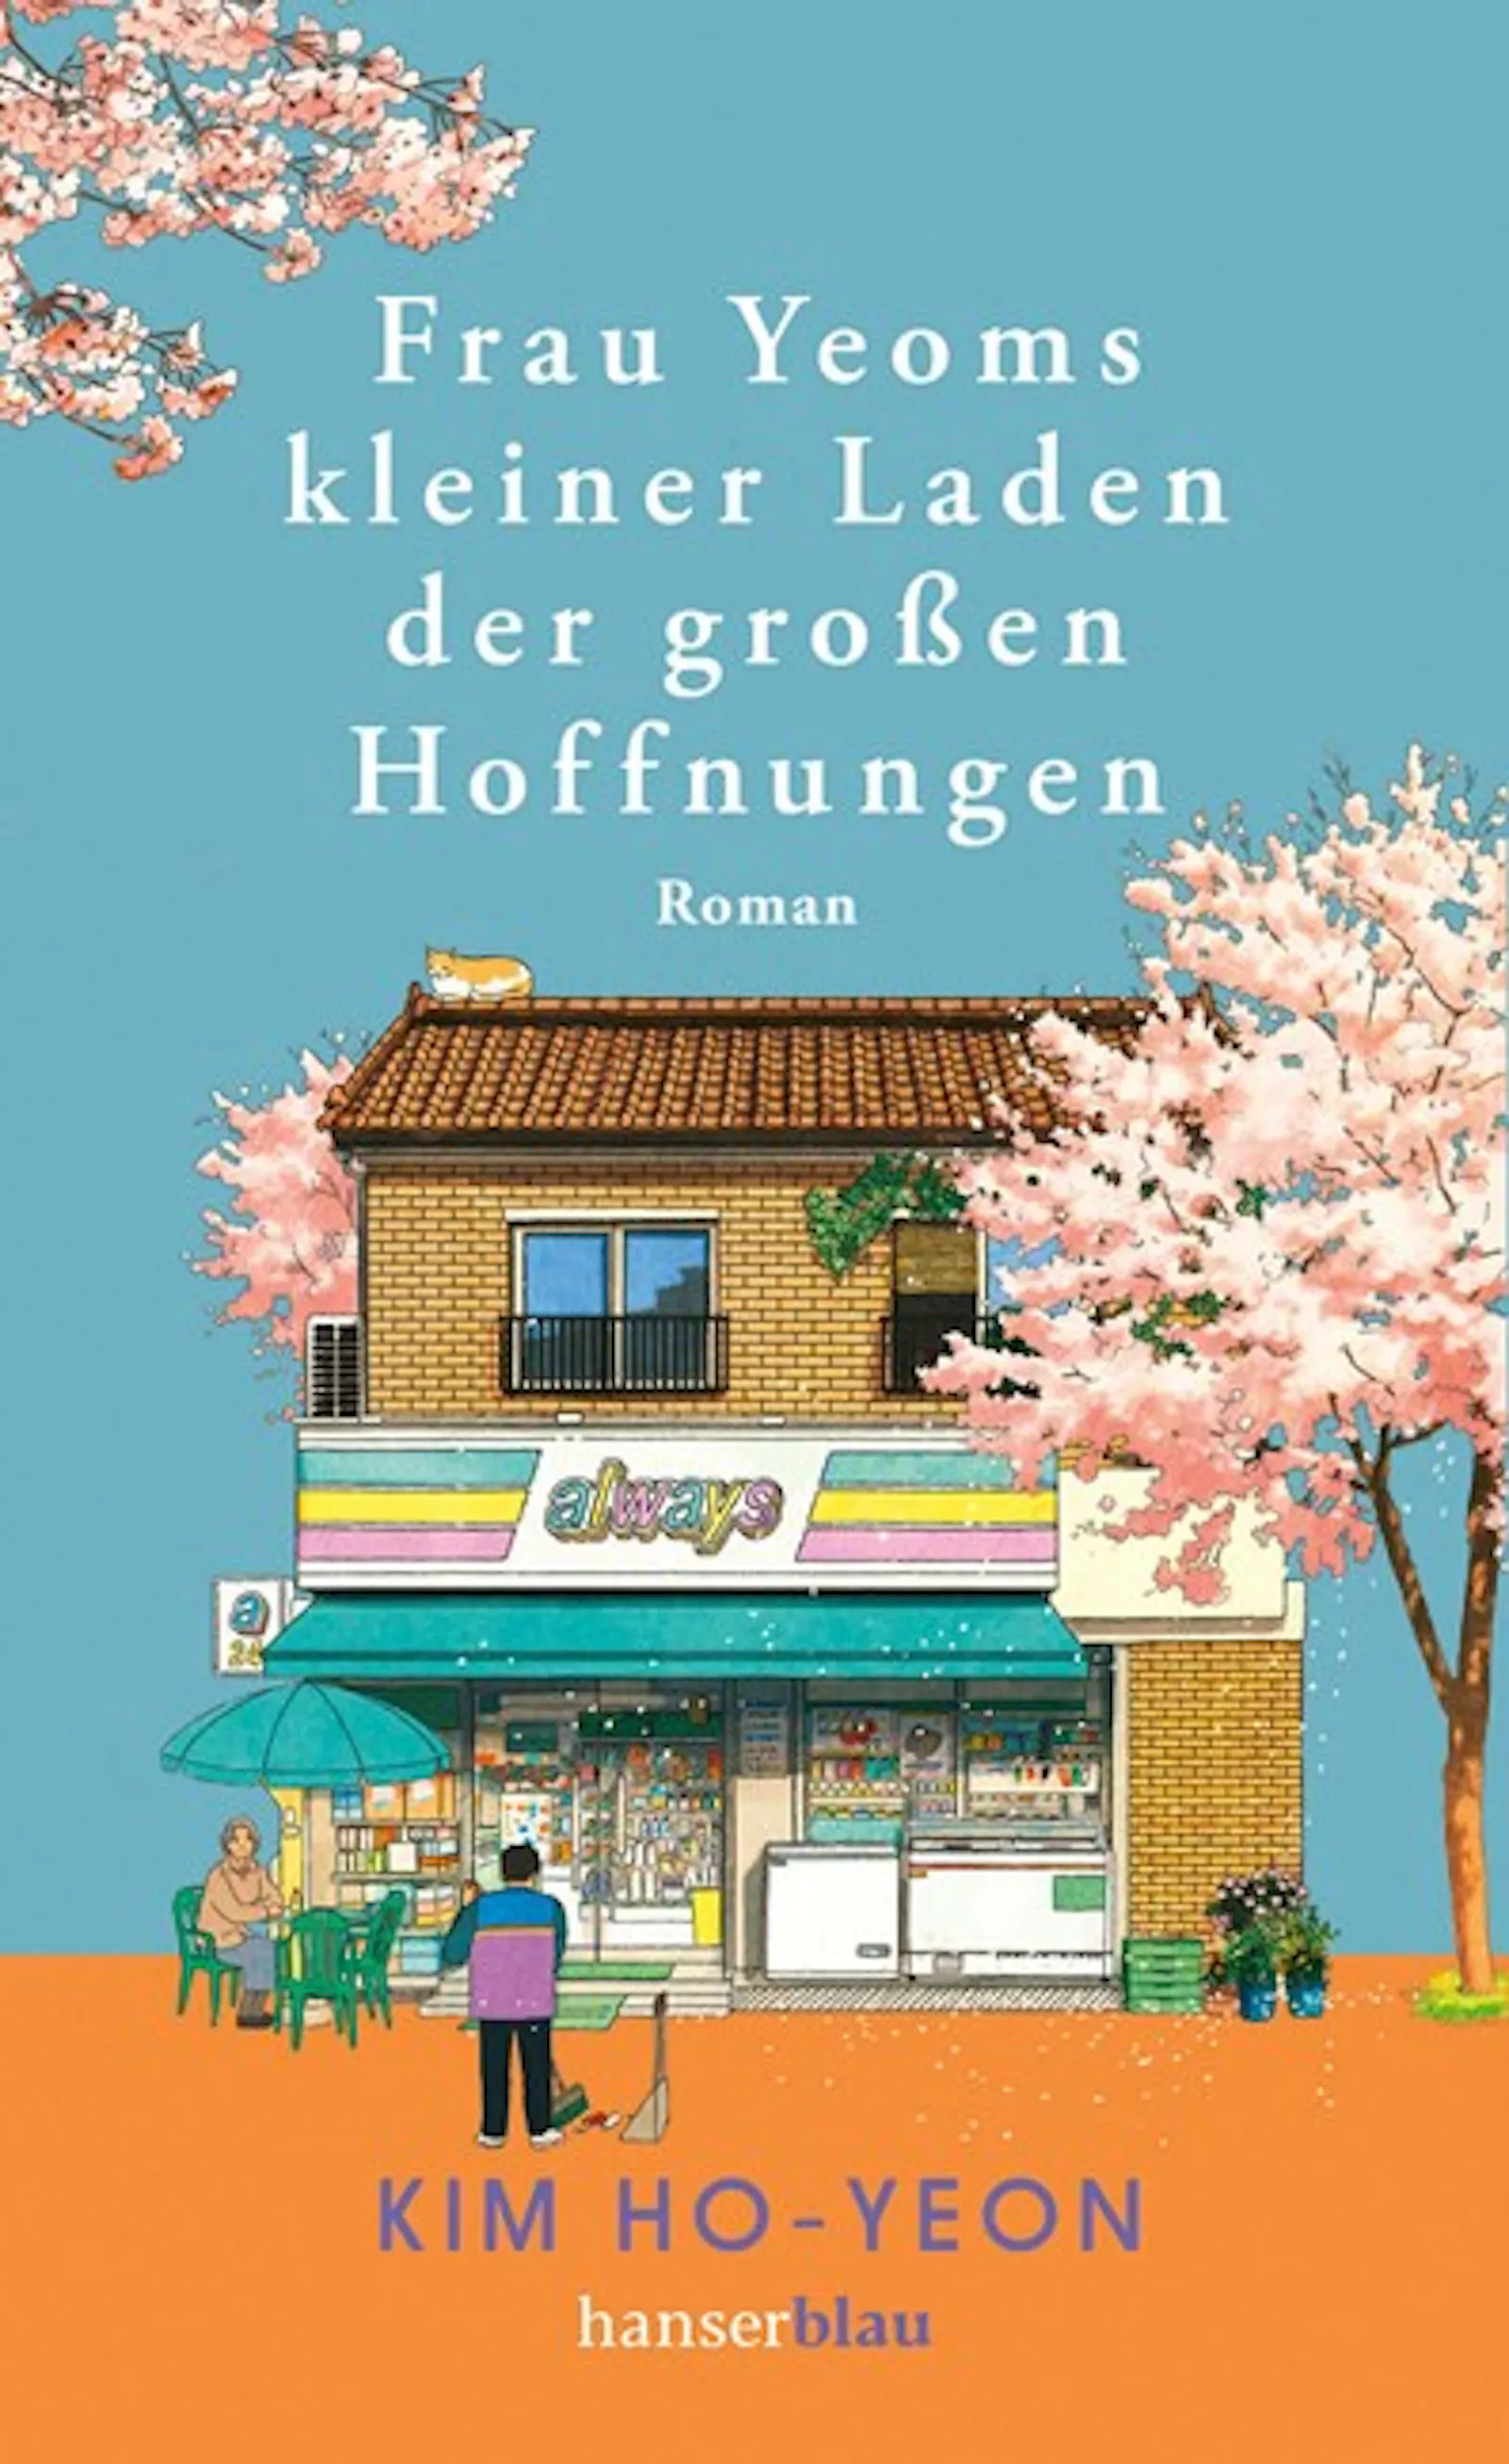 Roman "Frau Yeoms kleiner Laden der großen Hoffnungen" von Kim Ho-yeon, erschienen bei hanserblau im Carl Hanser Verlag